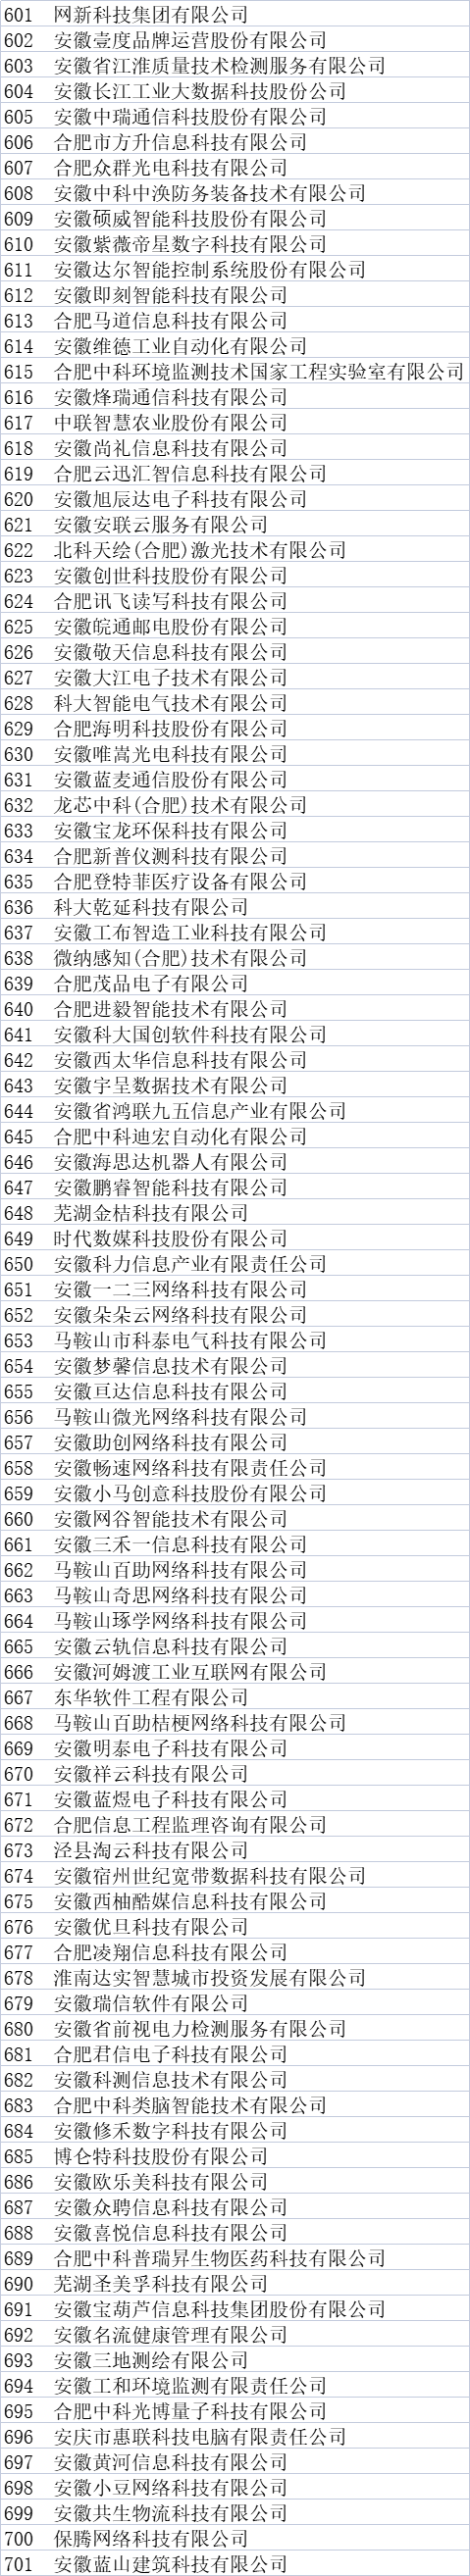 安徽省大数据企业名单